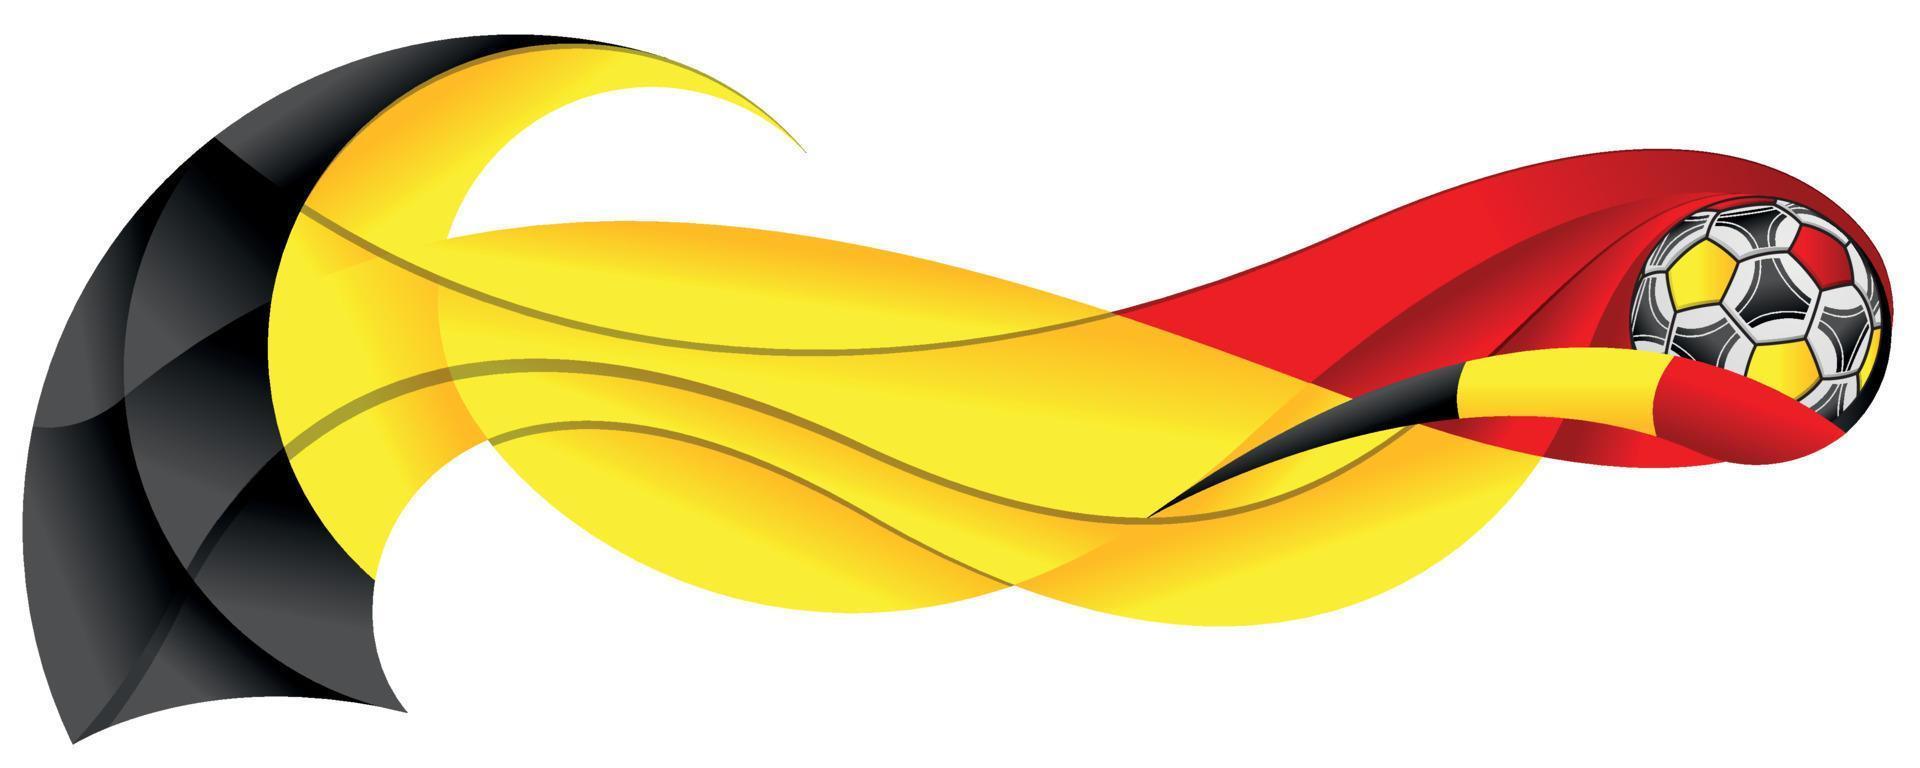 bola de futebol preta amarela e vermelha deixando um rastro abstrato na forma de um ondulado com as cores da bandeira da bélgica em um fundo branco vetor